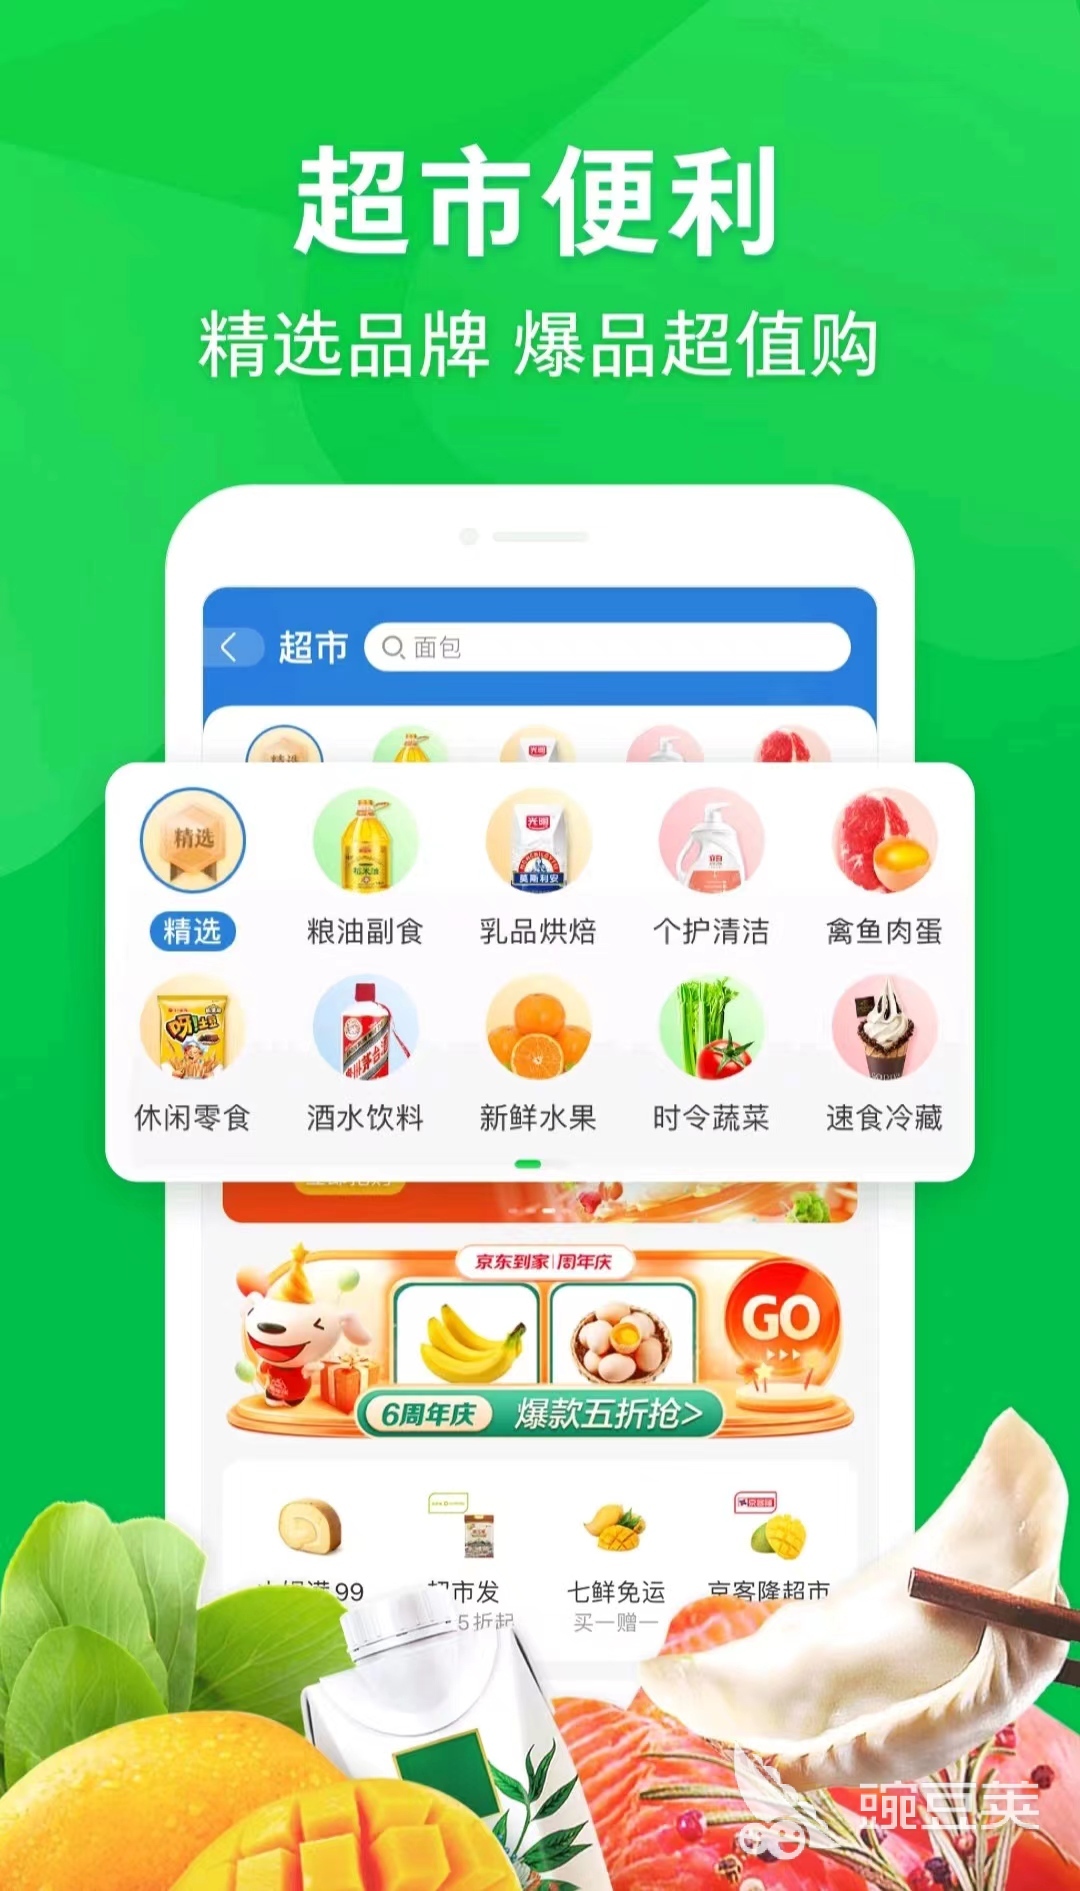 重庆买菜送菜app哪个好2022 重庆买菜送菜app大全